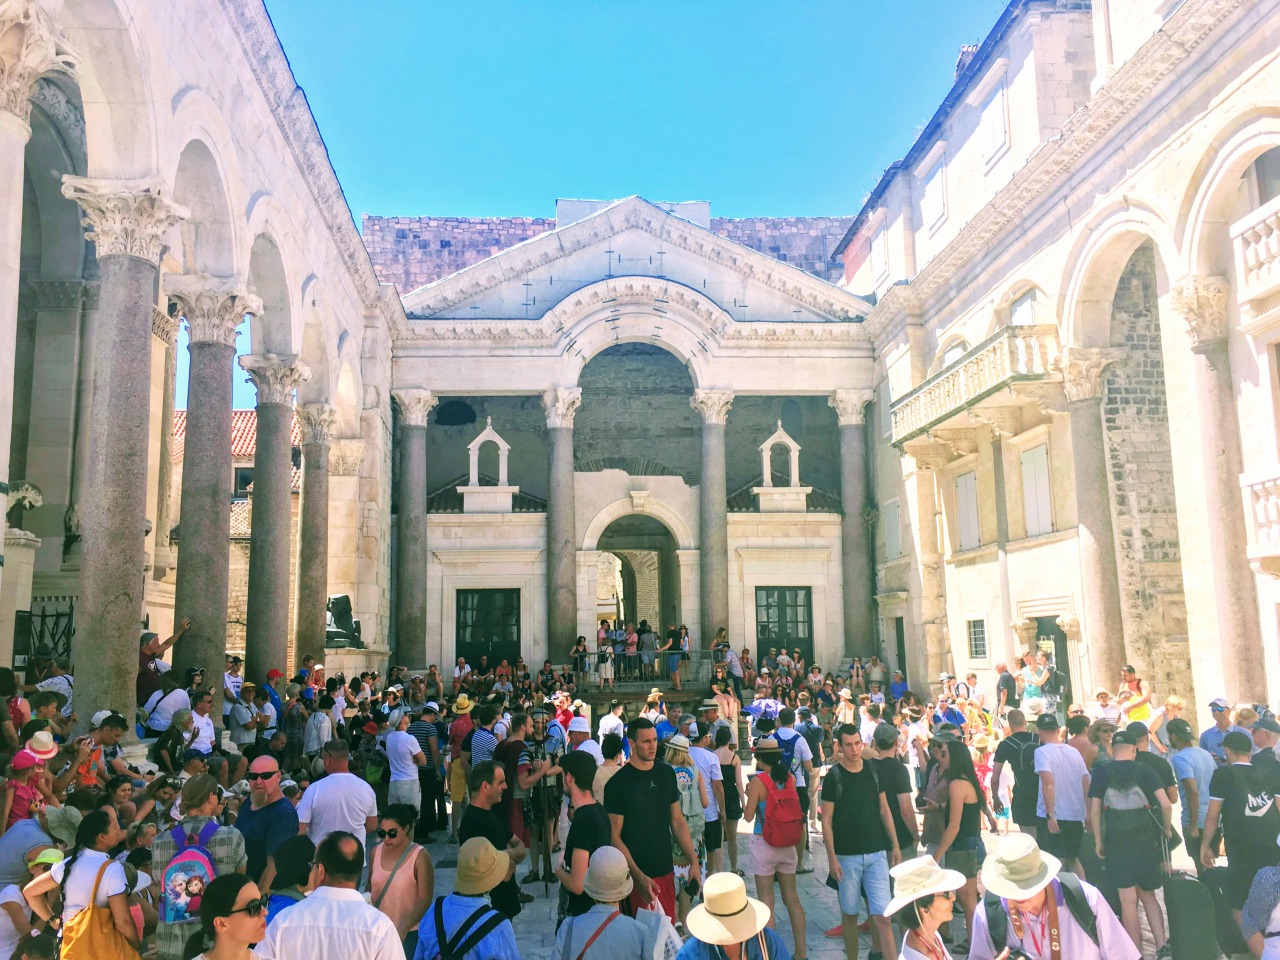 観光客であふれるスプリット旧市街・ディオクレティアヌスの宮殿の中心地